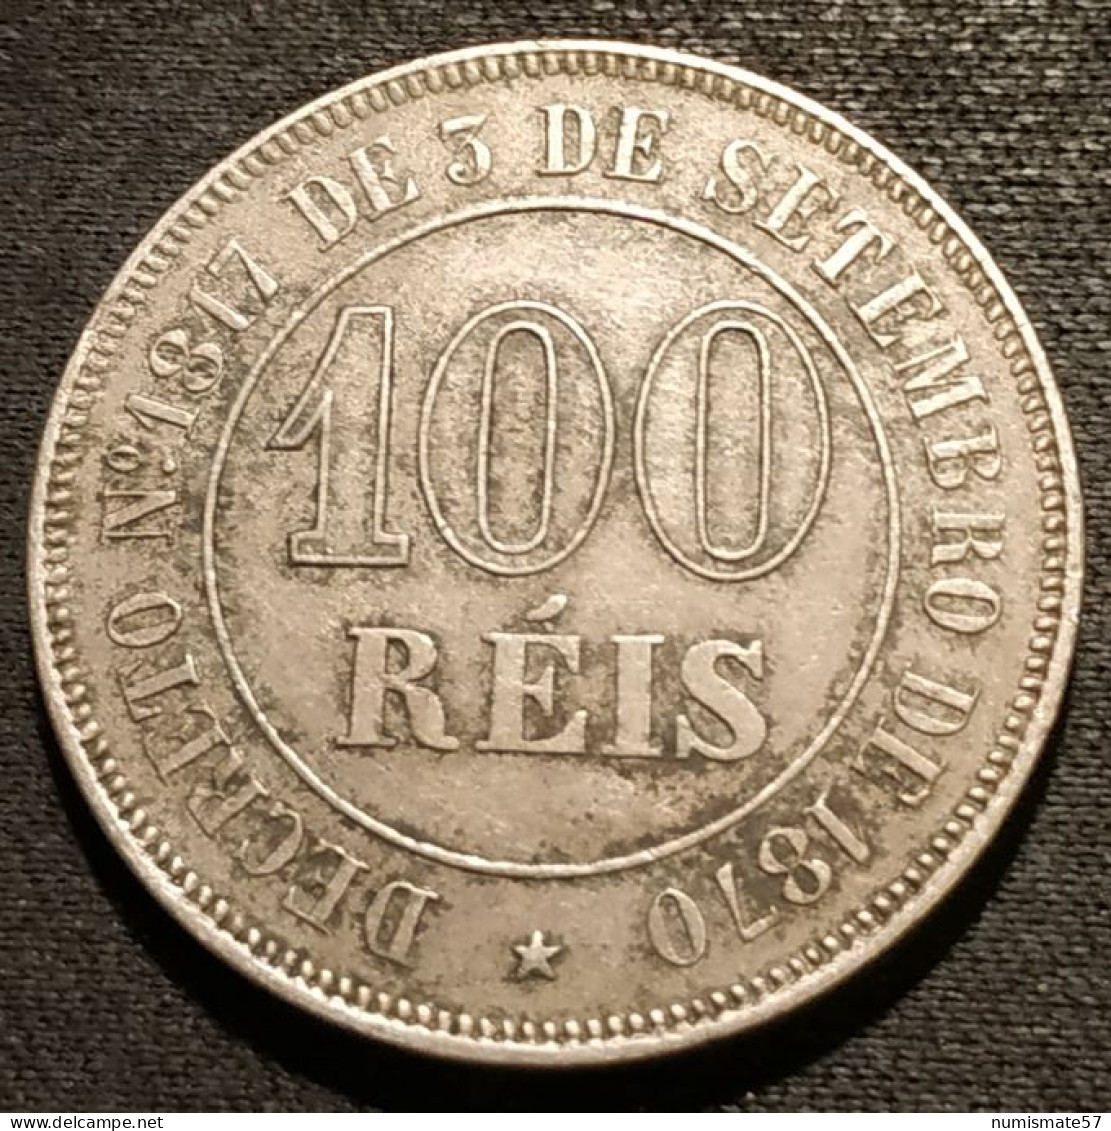 BRESIL - 100 REIS 1871 - Pedro II - KM 477 - Brasil - Brazil - Brazil